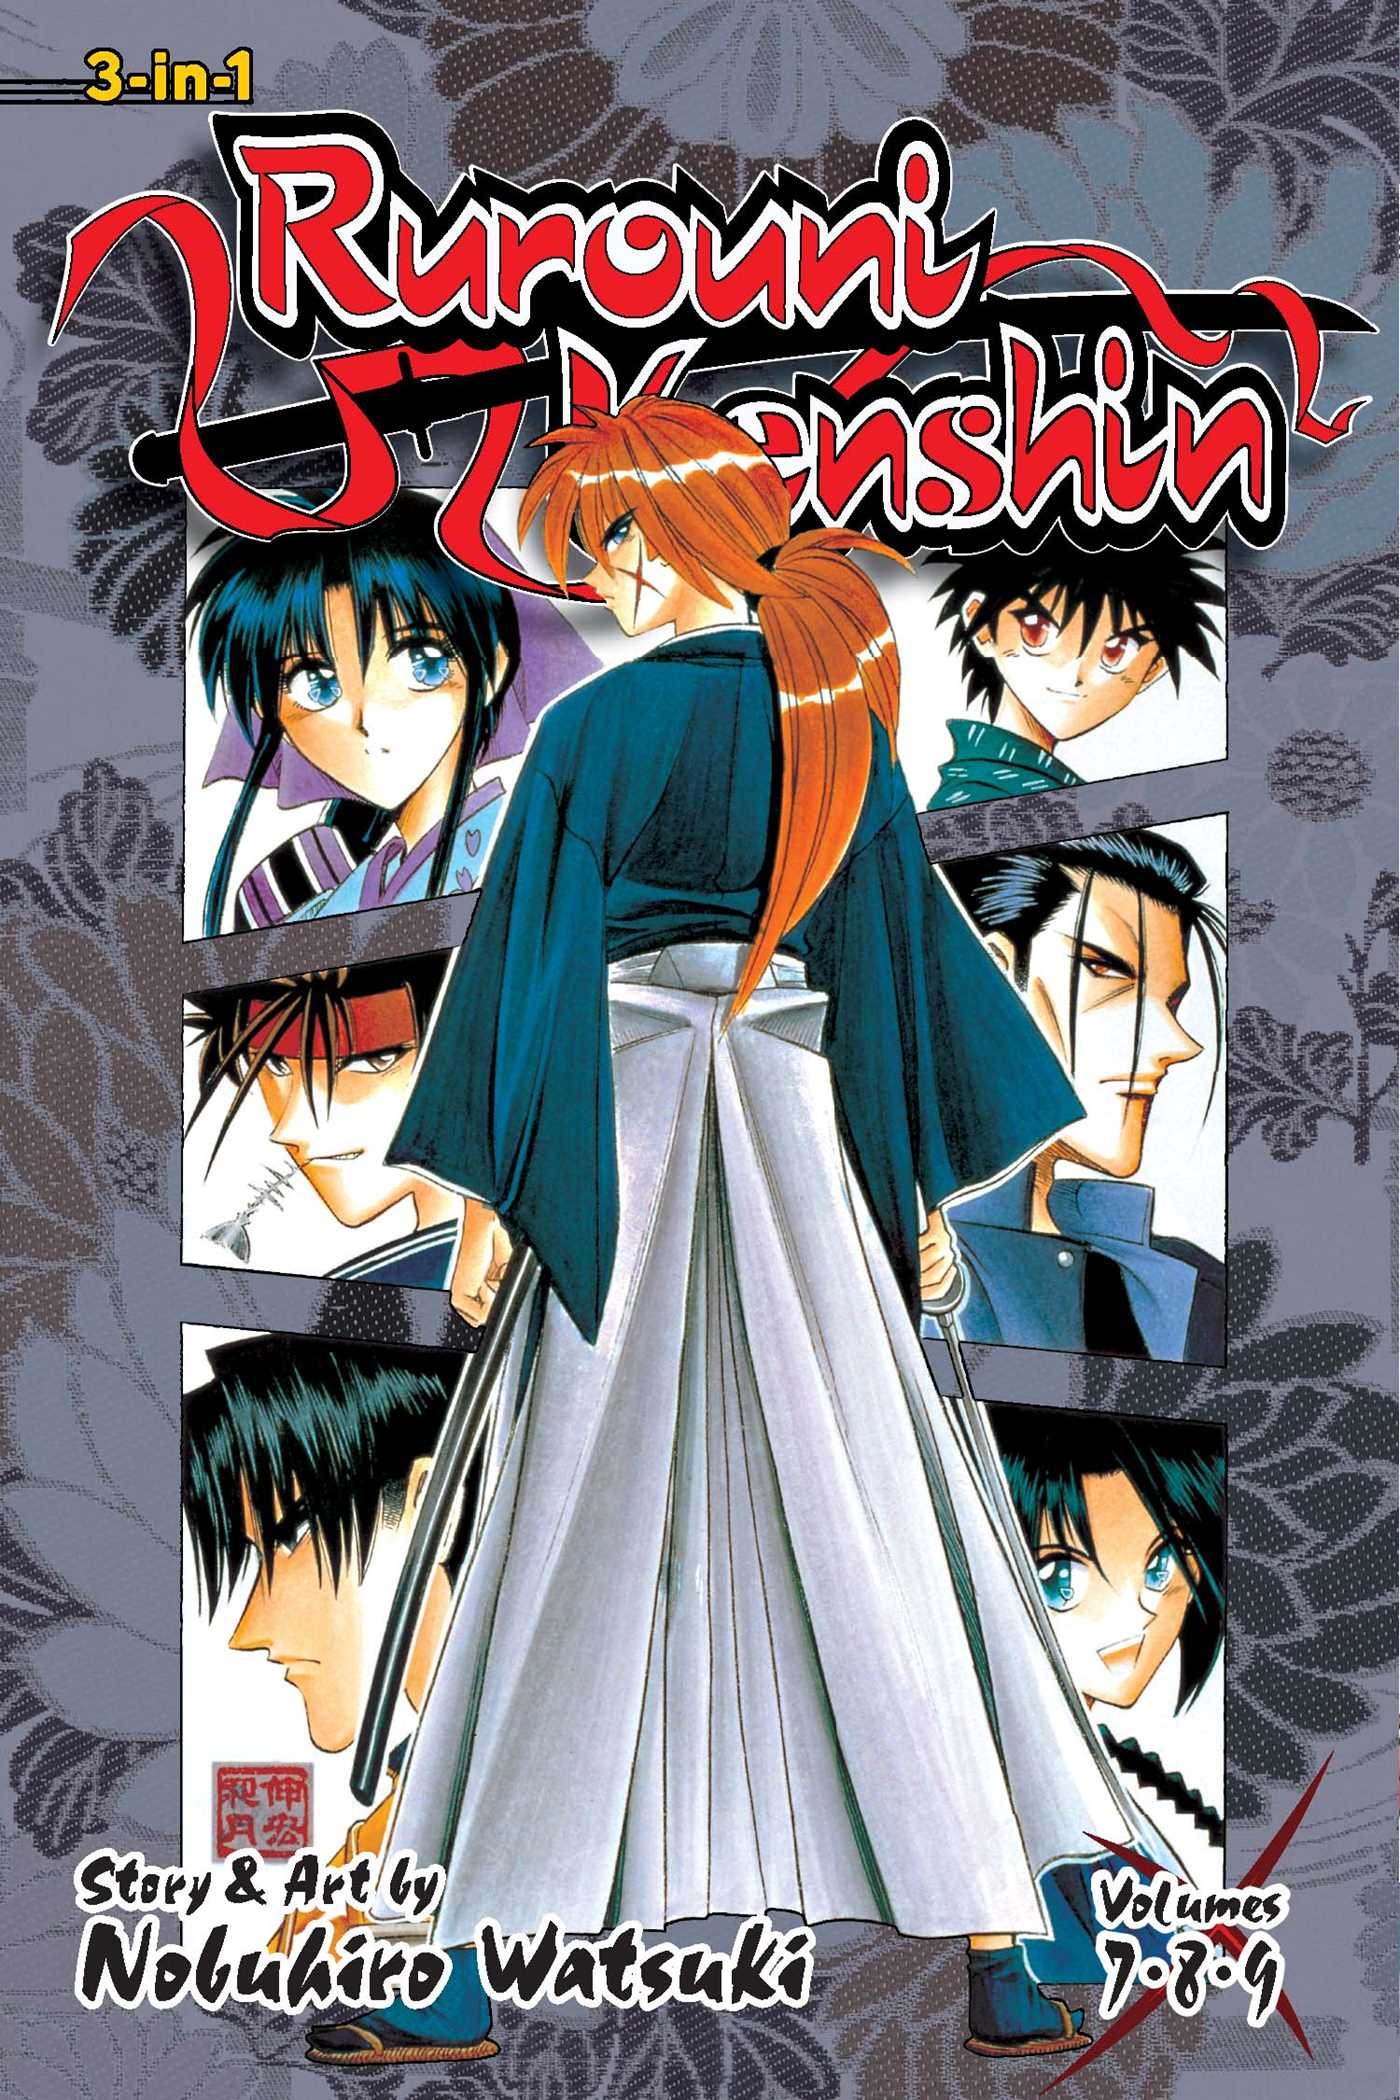 Rurouni Kenshin: Meiji Kenkaku Romantan - Hokkaido-hen Manga